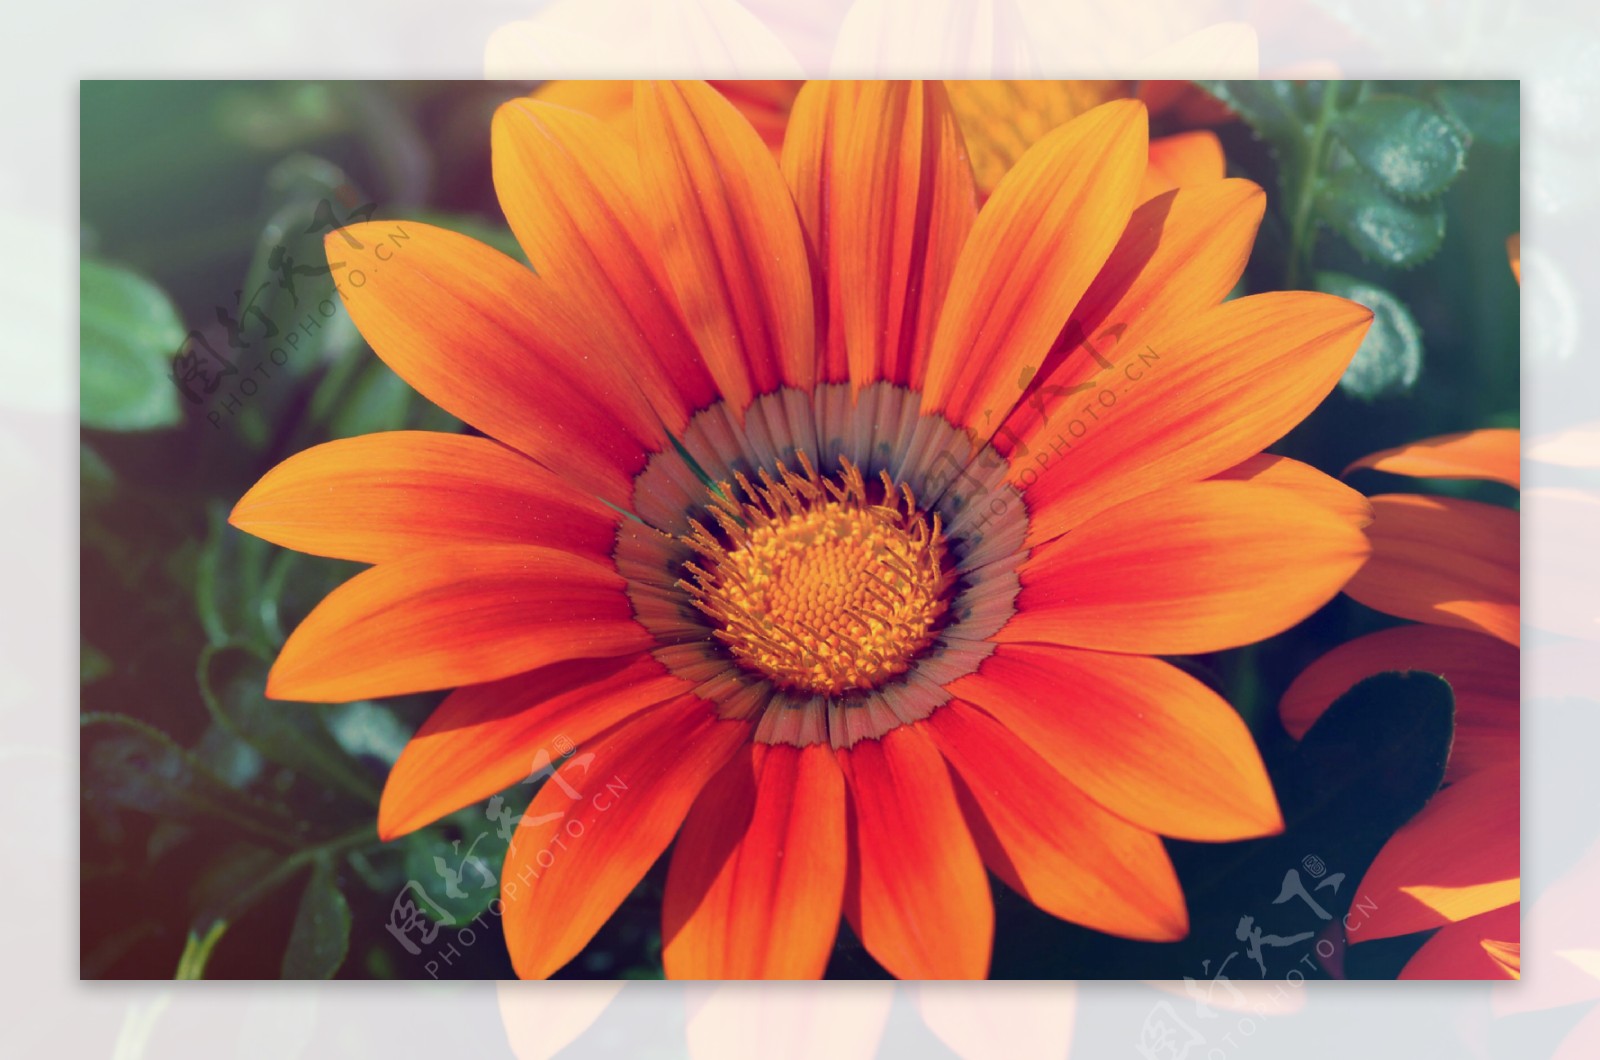 位图植物花朵写实花卉太阳花免费素材